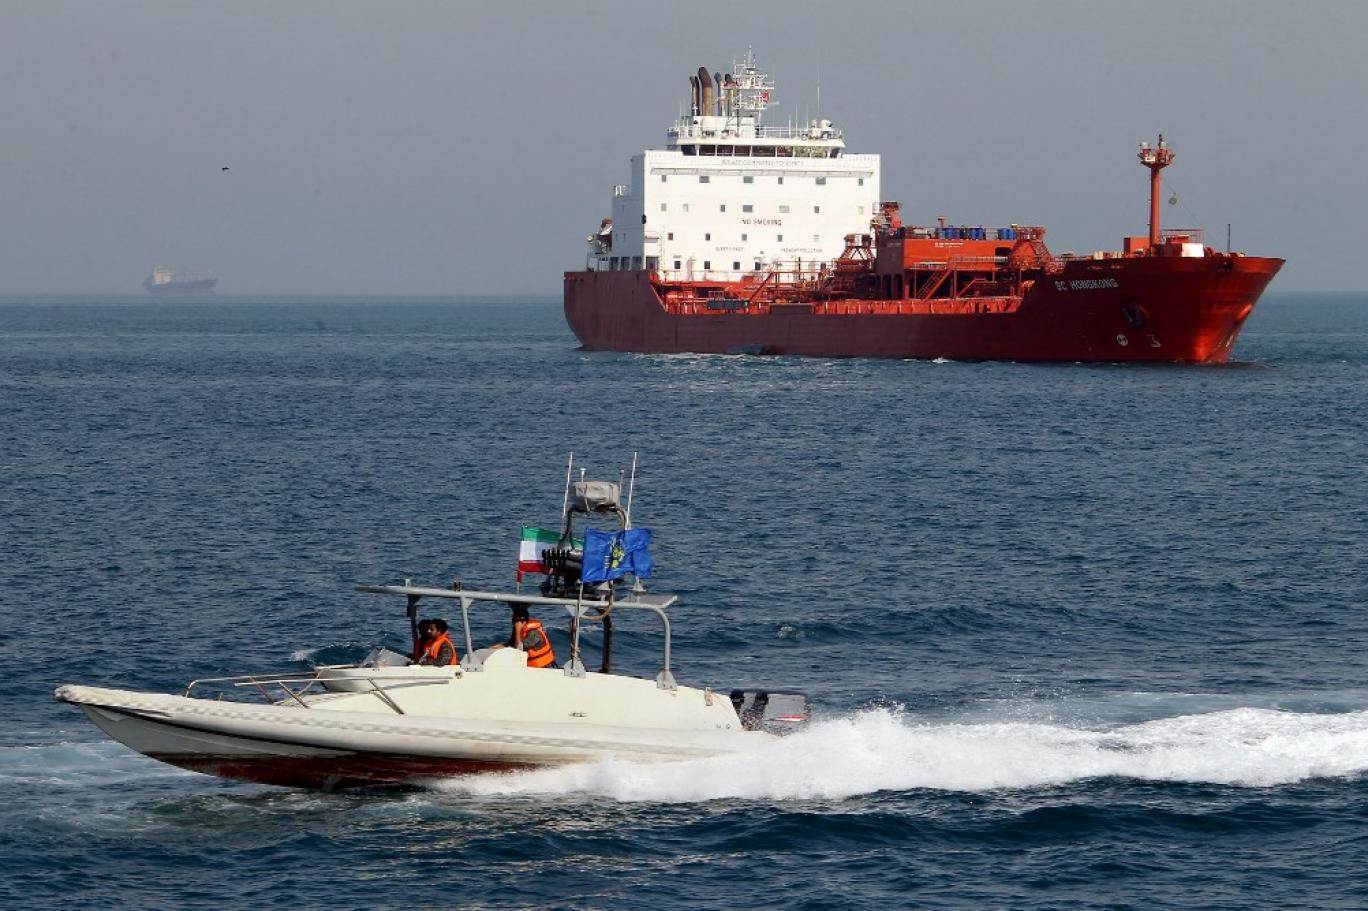 دام برس : دام برس | بين سفينة كليوباترا المصرية وسفينة حزب الله الإيرانية... بقلم: حليم خاتون
